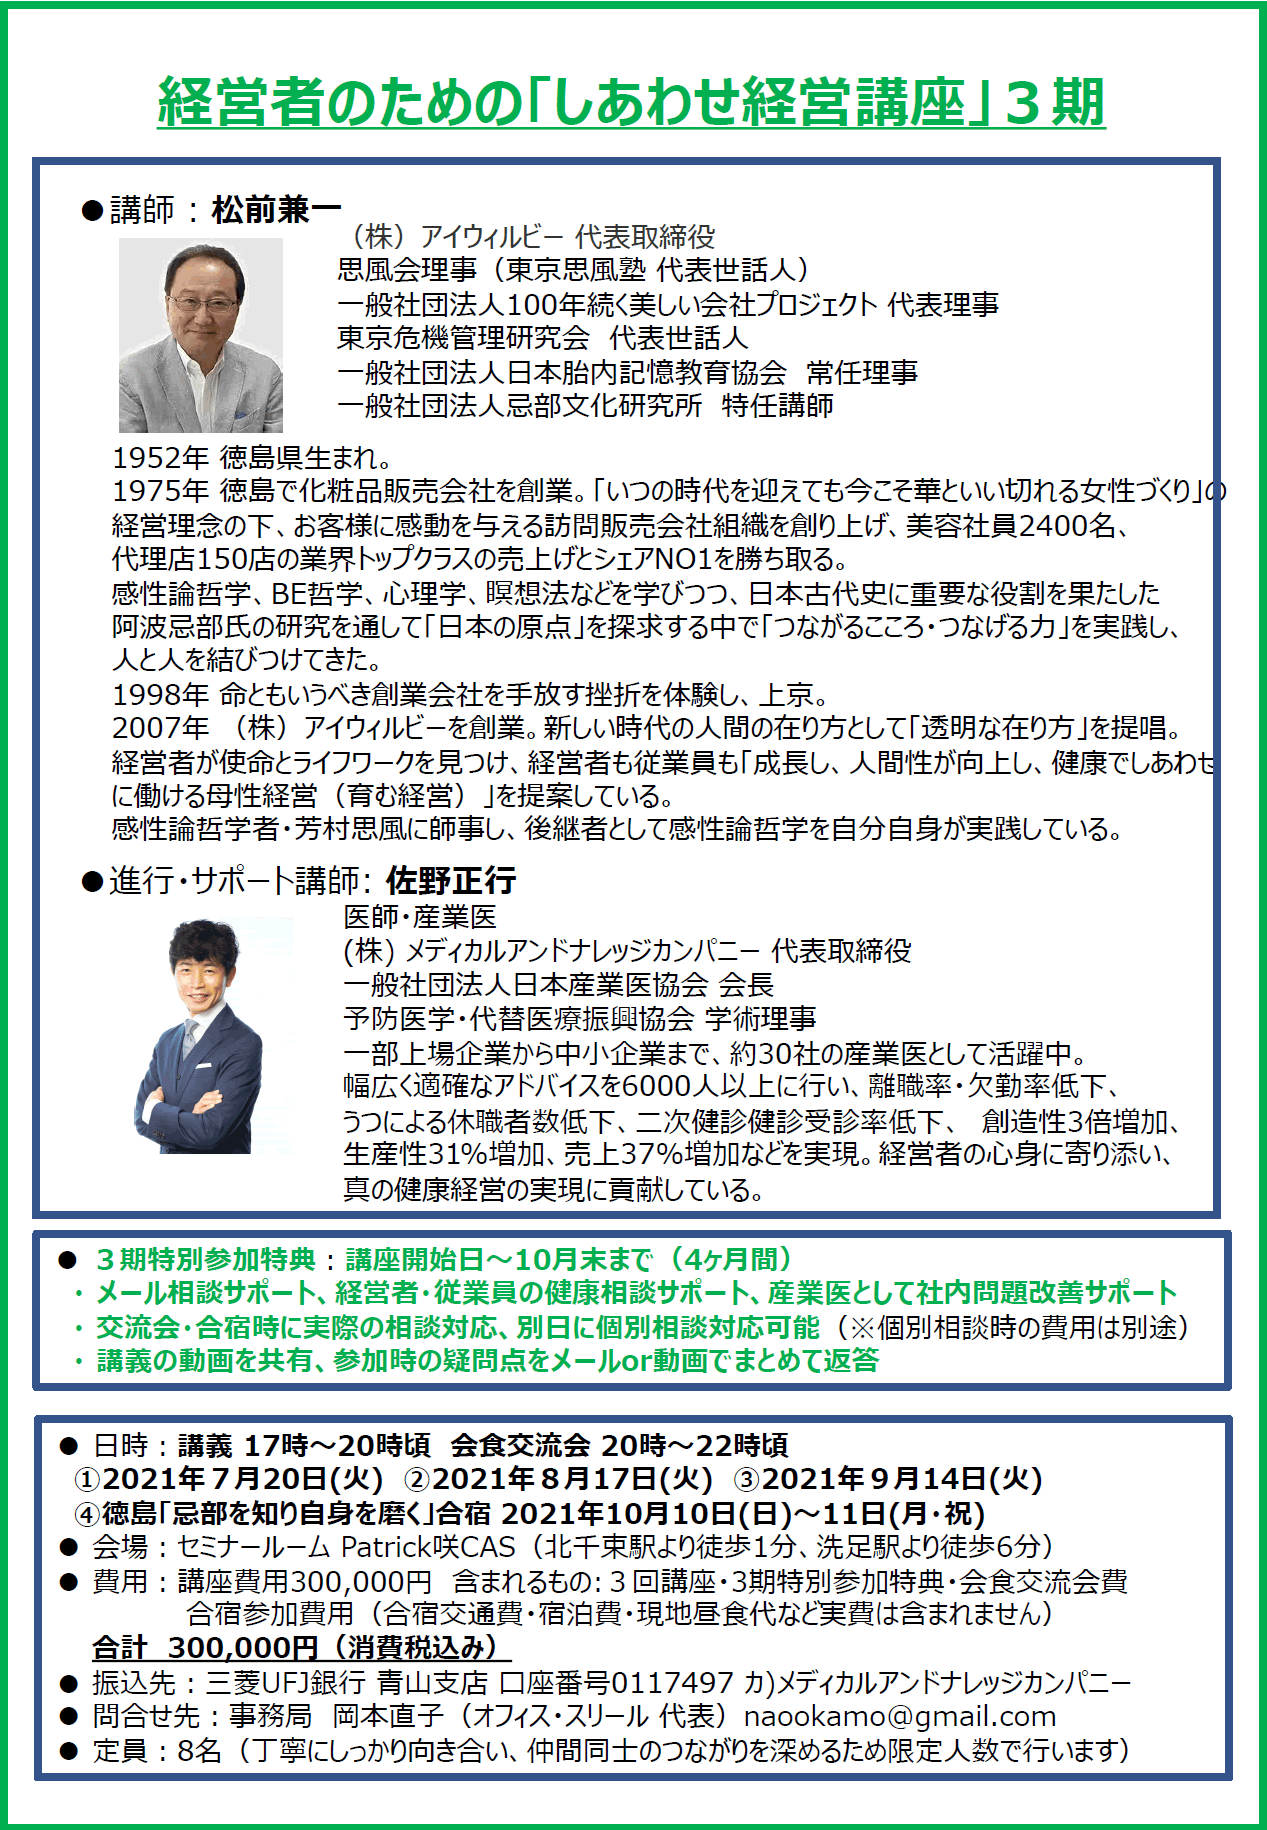 siawasekeie2 - 兼ちゃん先生の「しあわせ経営講座」3期募集